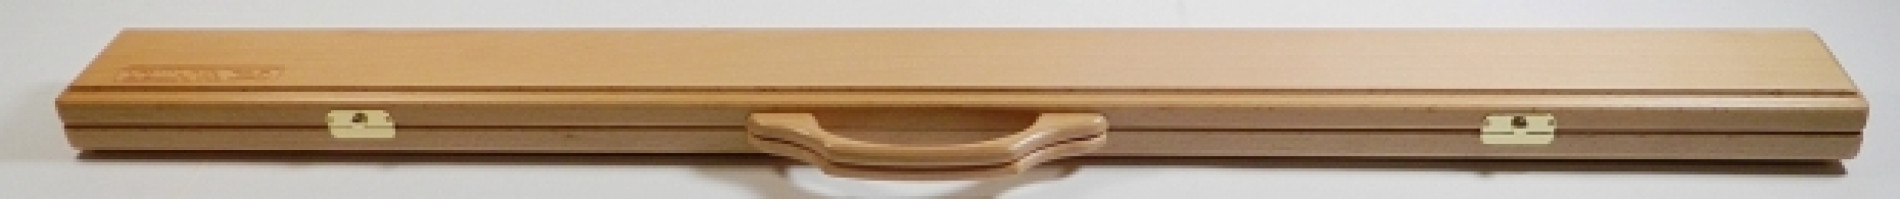 Кейс деревянный для 2-х составного кия VANTEX